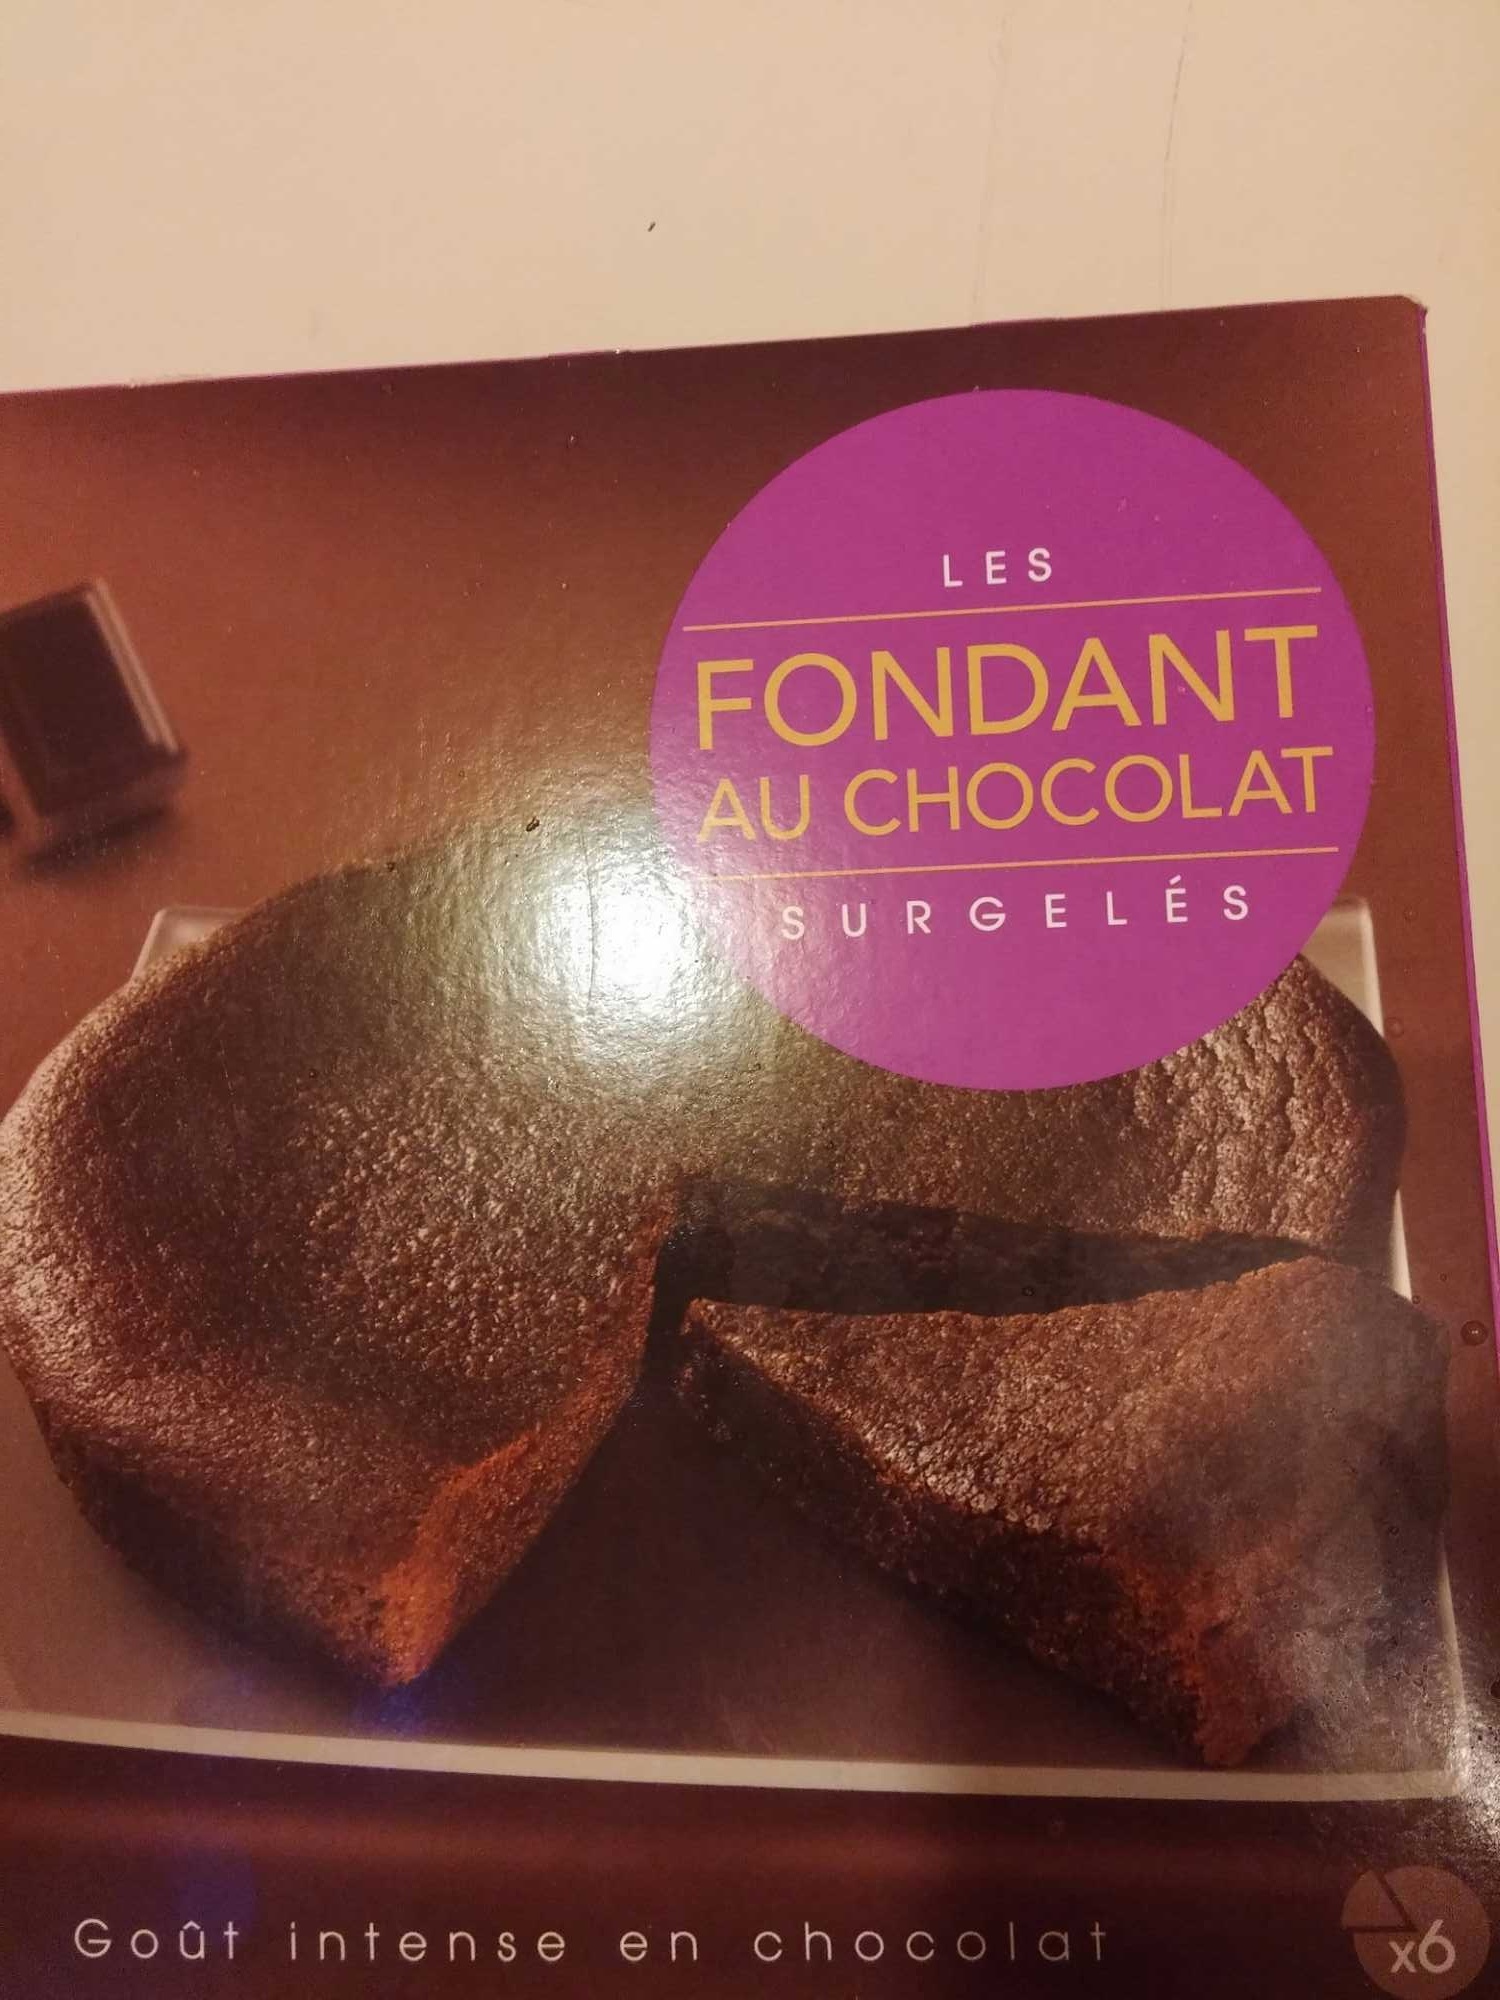 Les Surgelés - Fondant au Chocolat - Product - fr